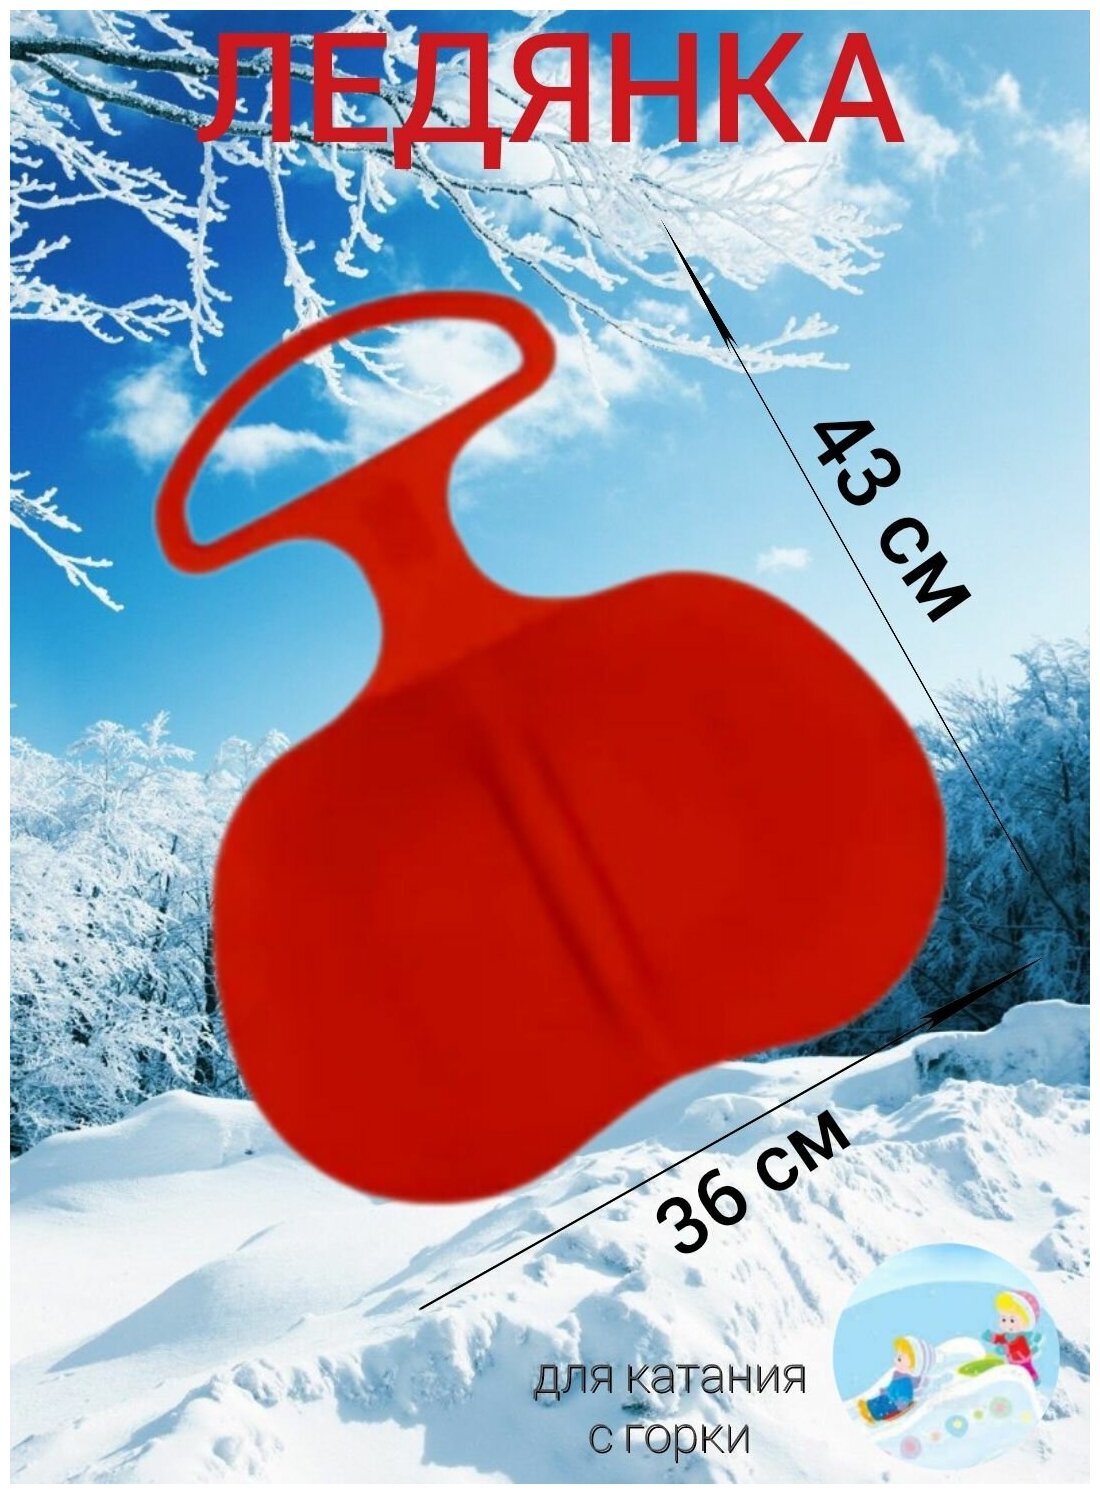 Ледянка 36 х 43 см круглая с ручкой красная, санки ледянка для катания на горках детская для зимних игр, зима, ледянки пластиковые